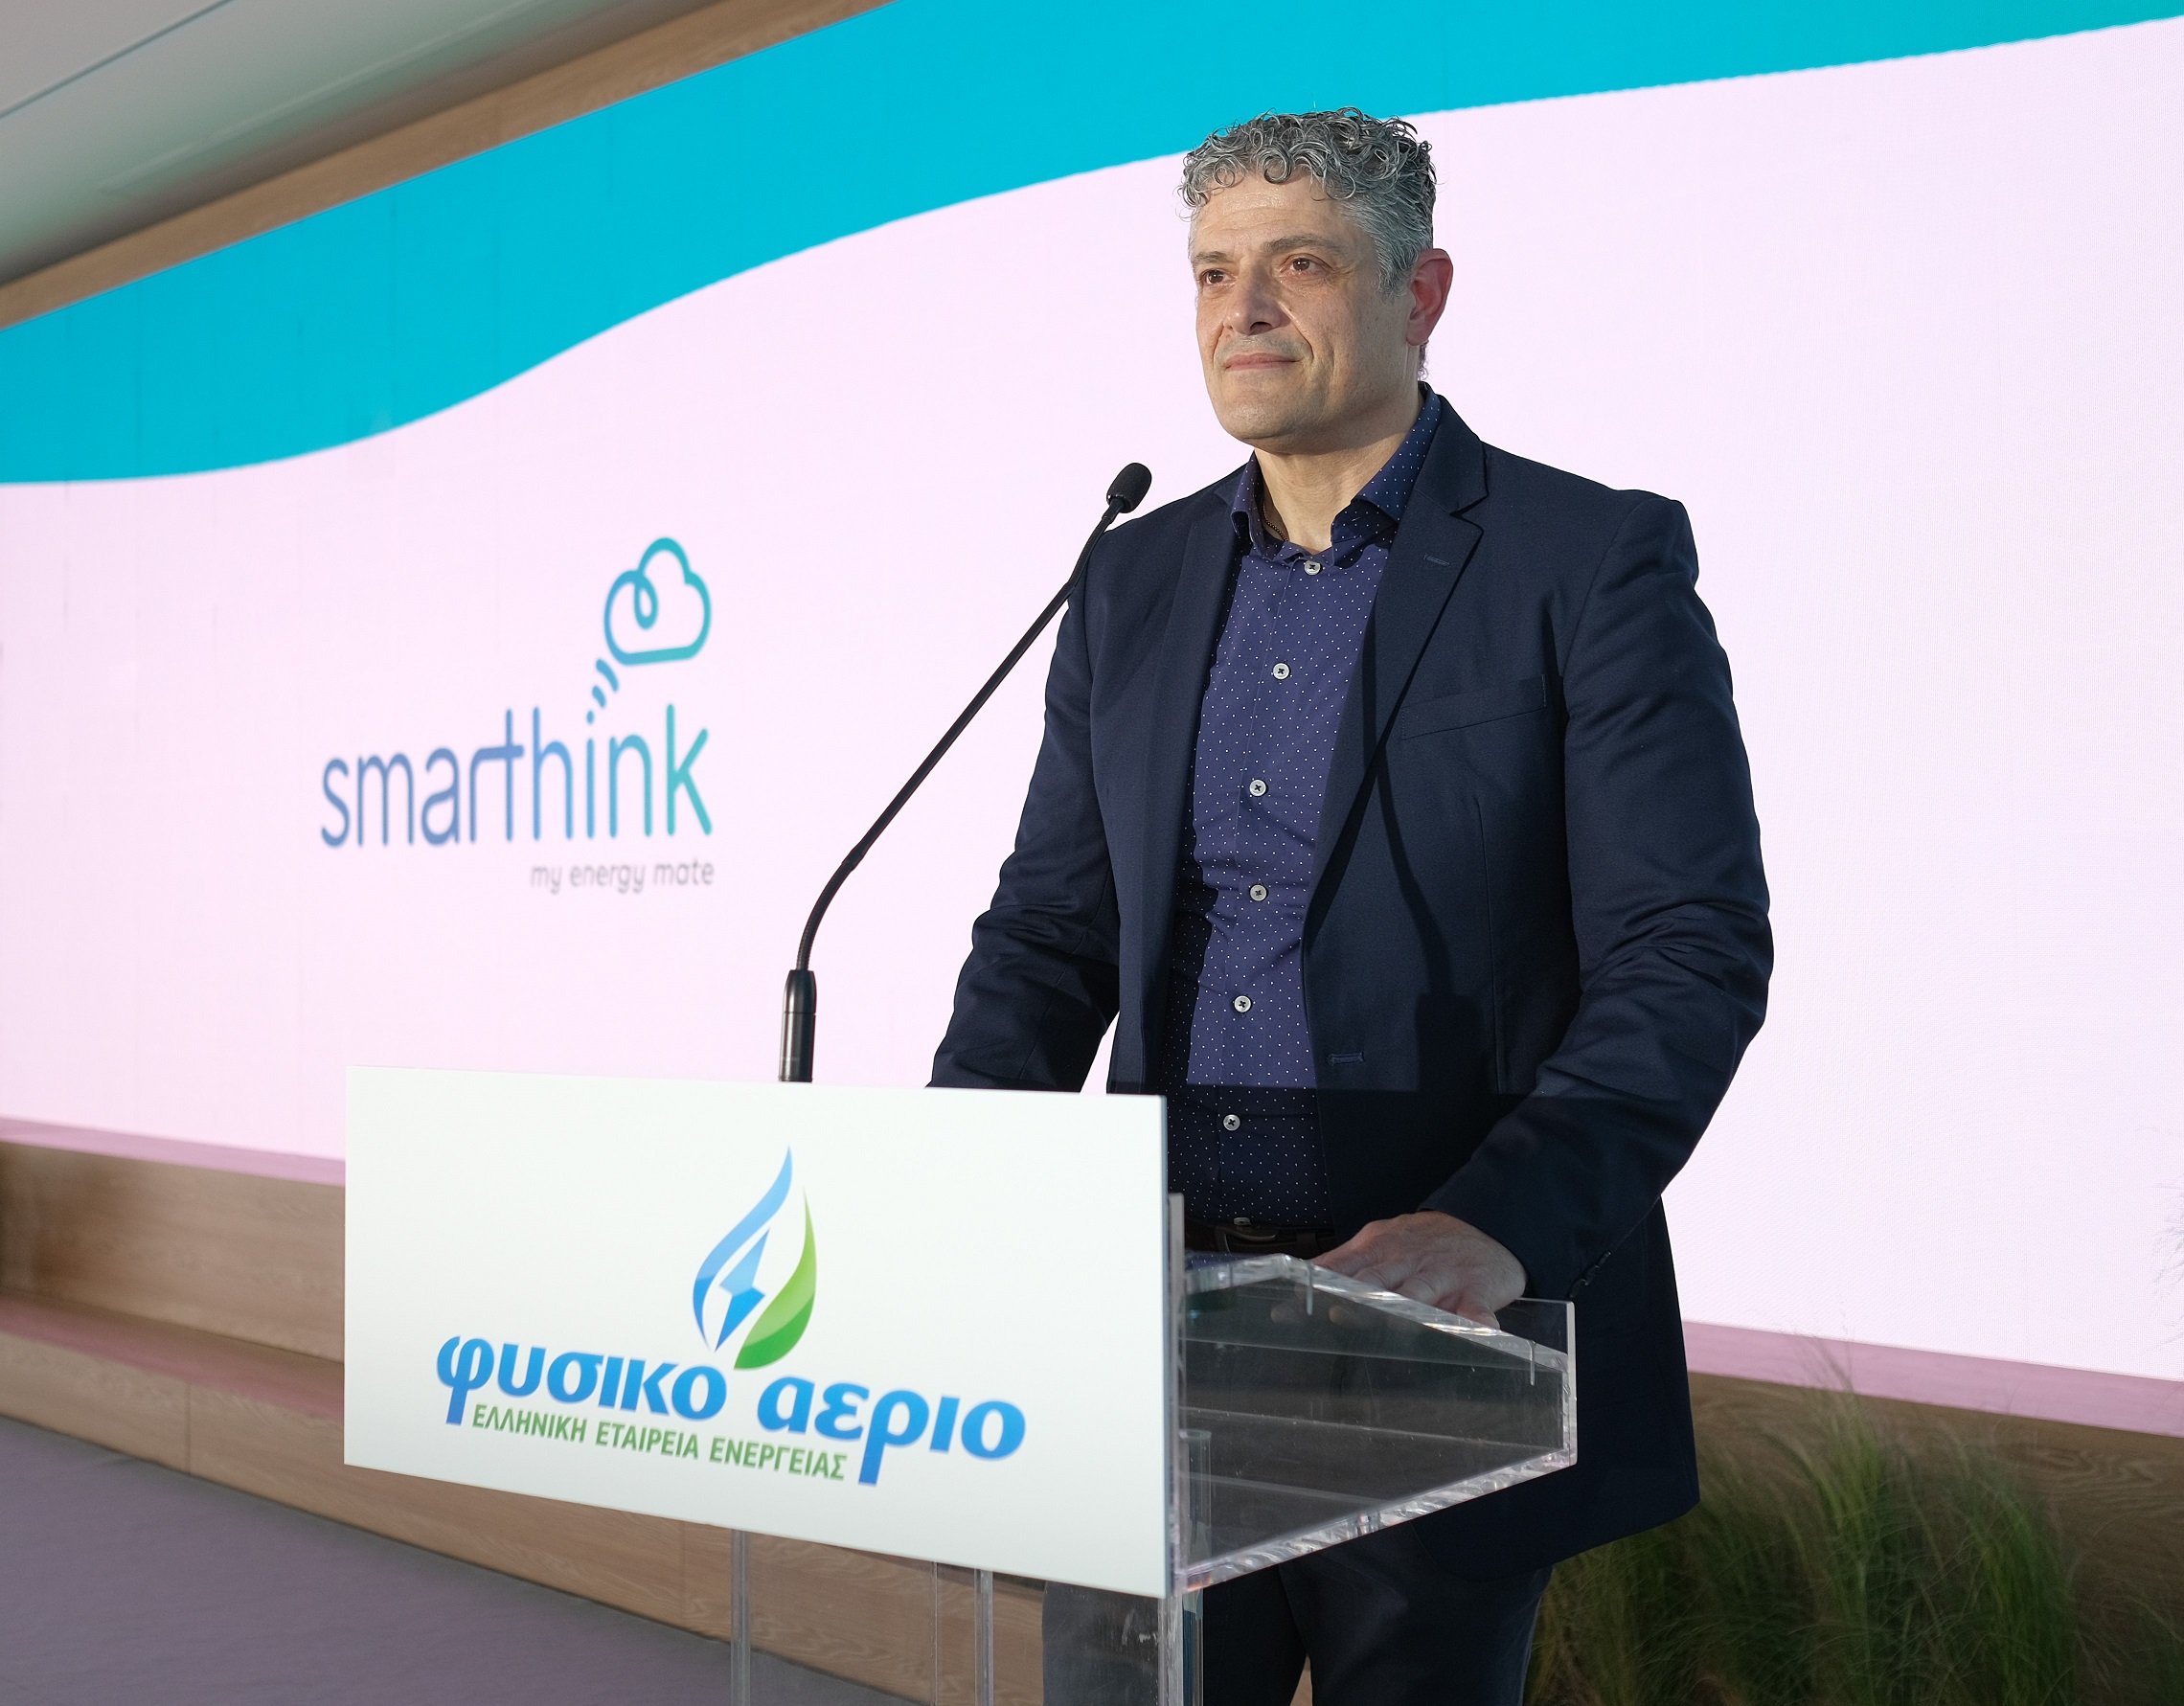 Φυσικό Αέριο Ελληνική Εταιρεία Ενέργειας: Νέα υπηρεσία Smarthink για εξοικονόμηση ενέργειας